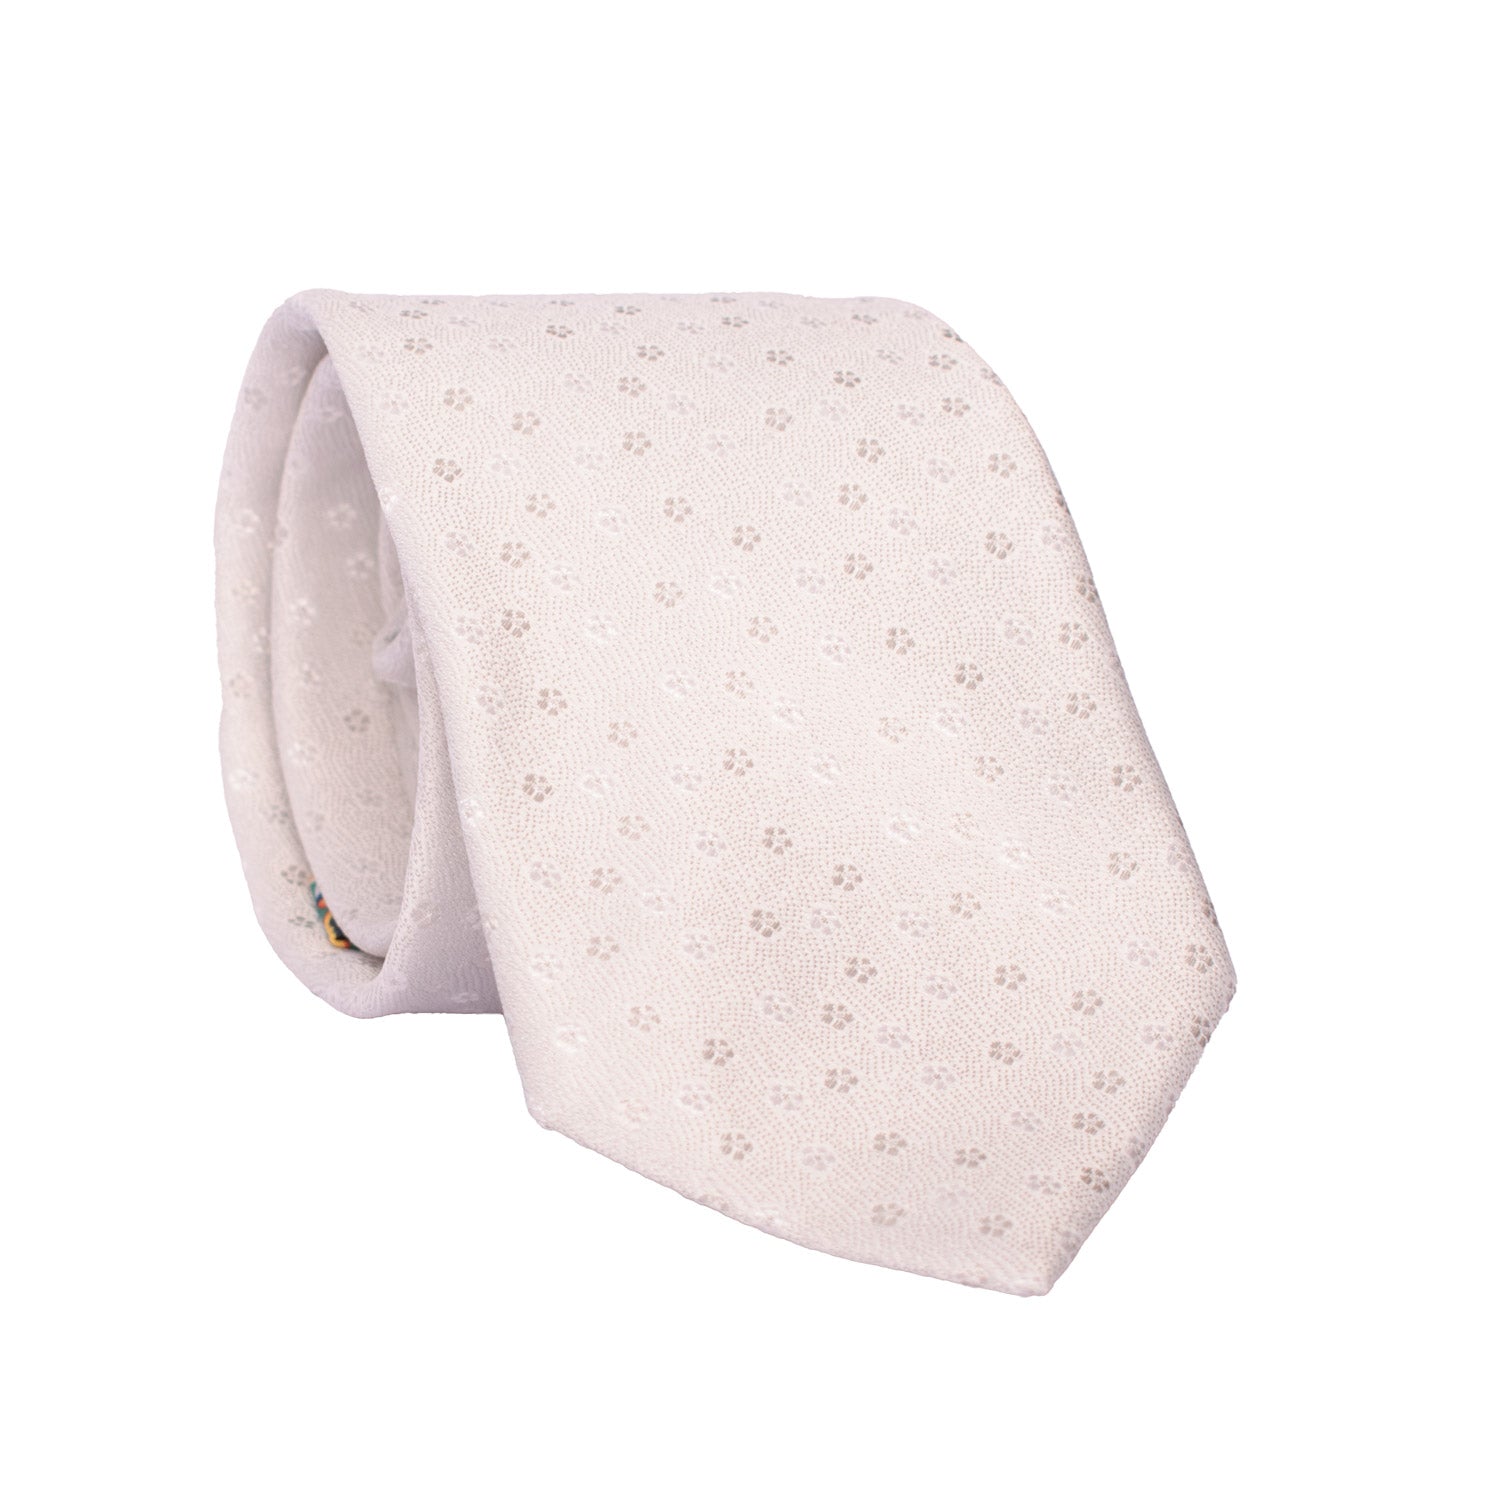 Cravatta da Cerimonia di Seta Bianco Perla Cangiante a Fiori Grigi CY6606 Arrotolata